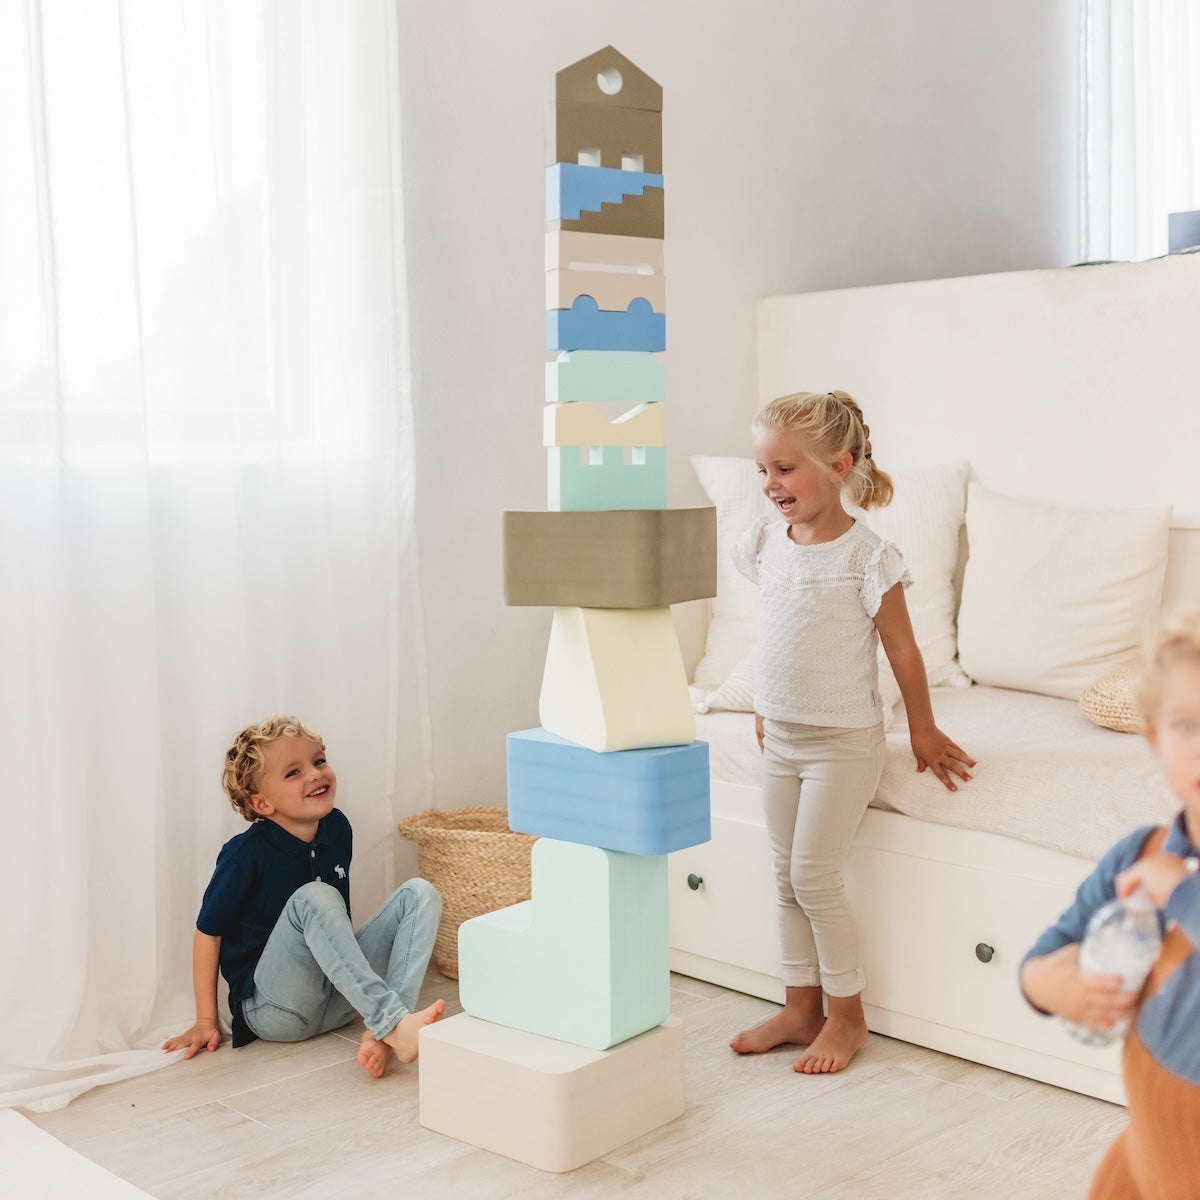 Met het Moes Play trapezium sky speelblok leert je kindje creatief spelen en wordt de motoriek op een originele manier gestimuleerd. Het speelblok is multifunctioneel en kan op verschillende manieren worden gebruikt om mee te spelen. VanZus